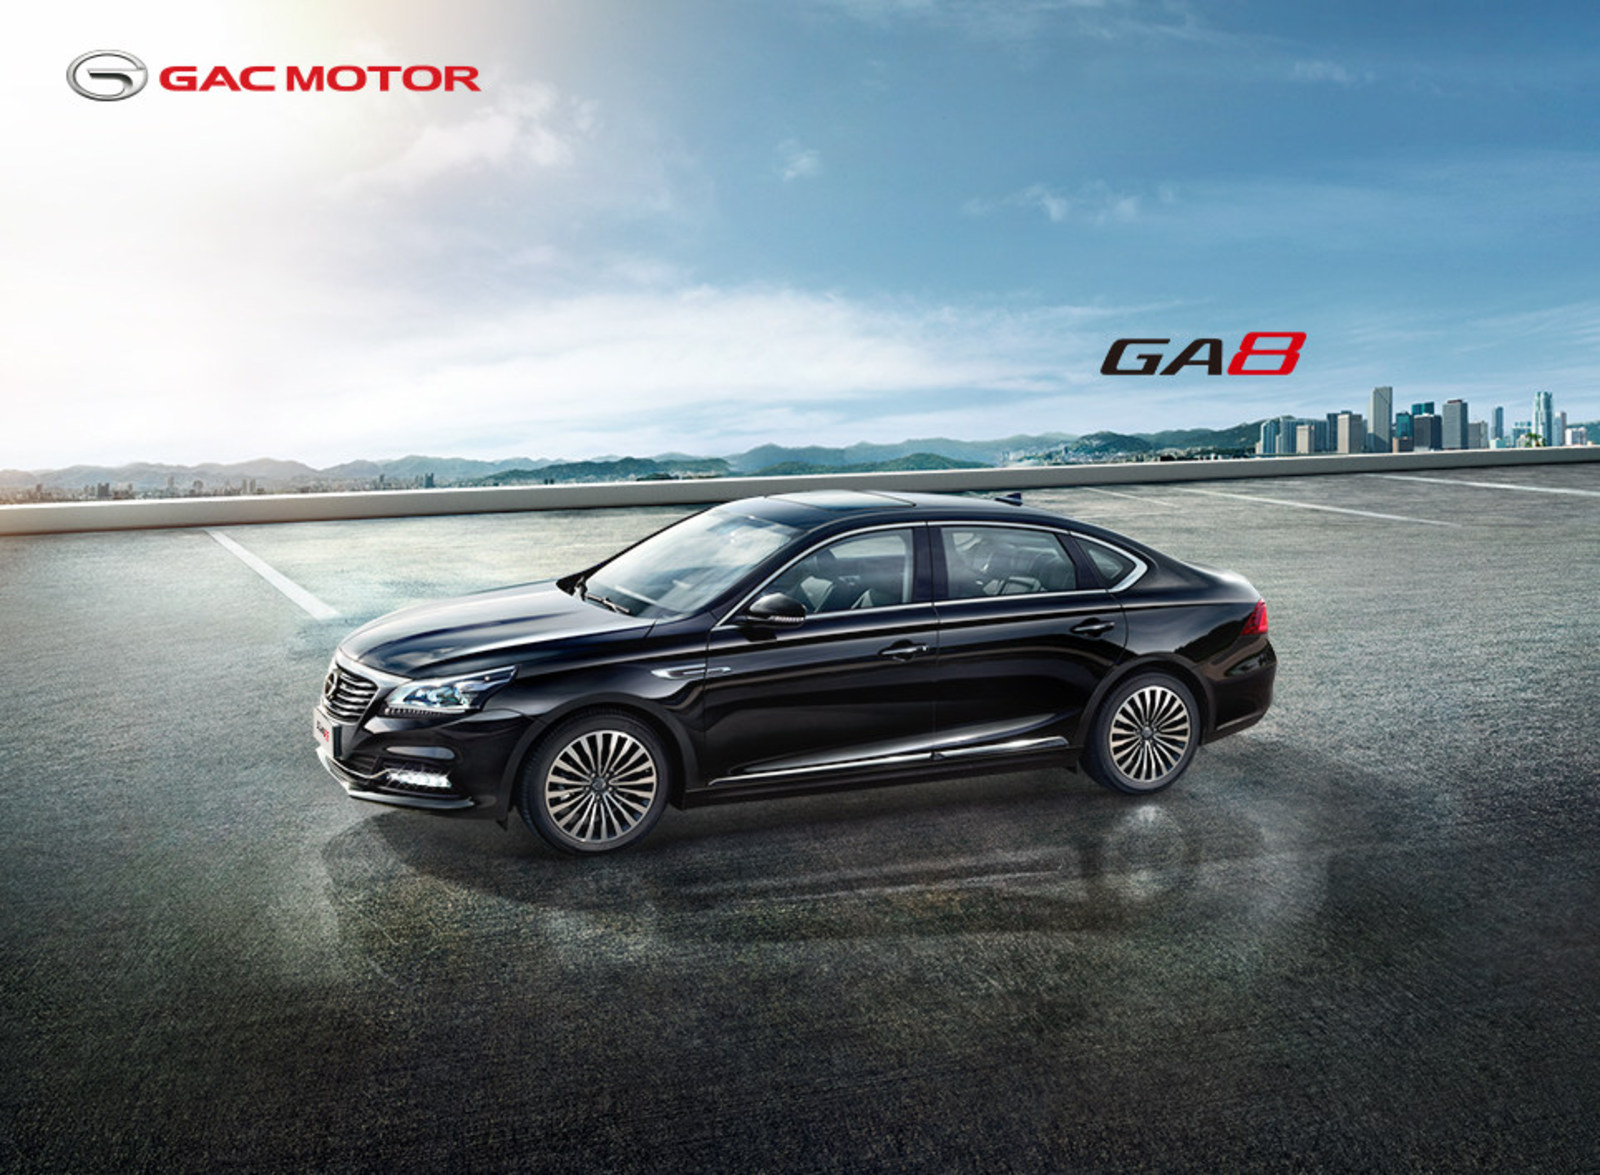 GAC Motors elite sedan GA8 (PRNewsfoto/GAC Motor)